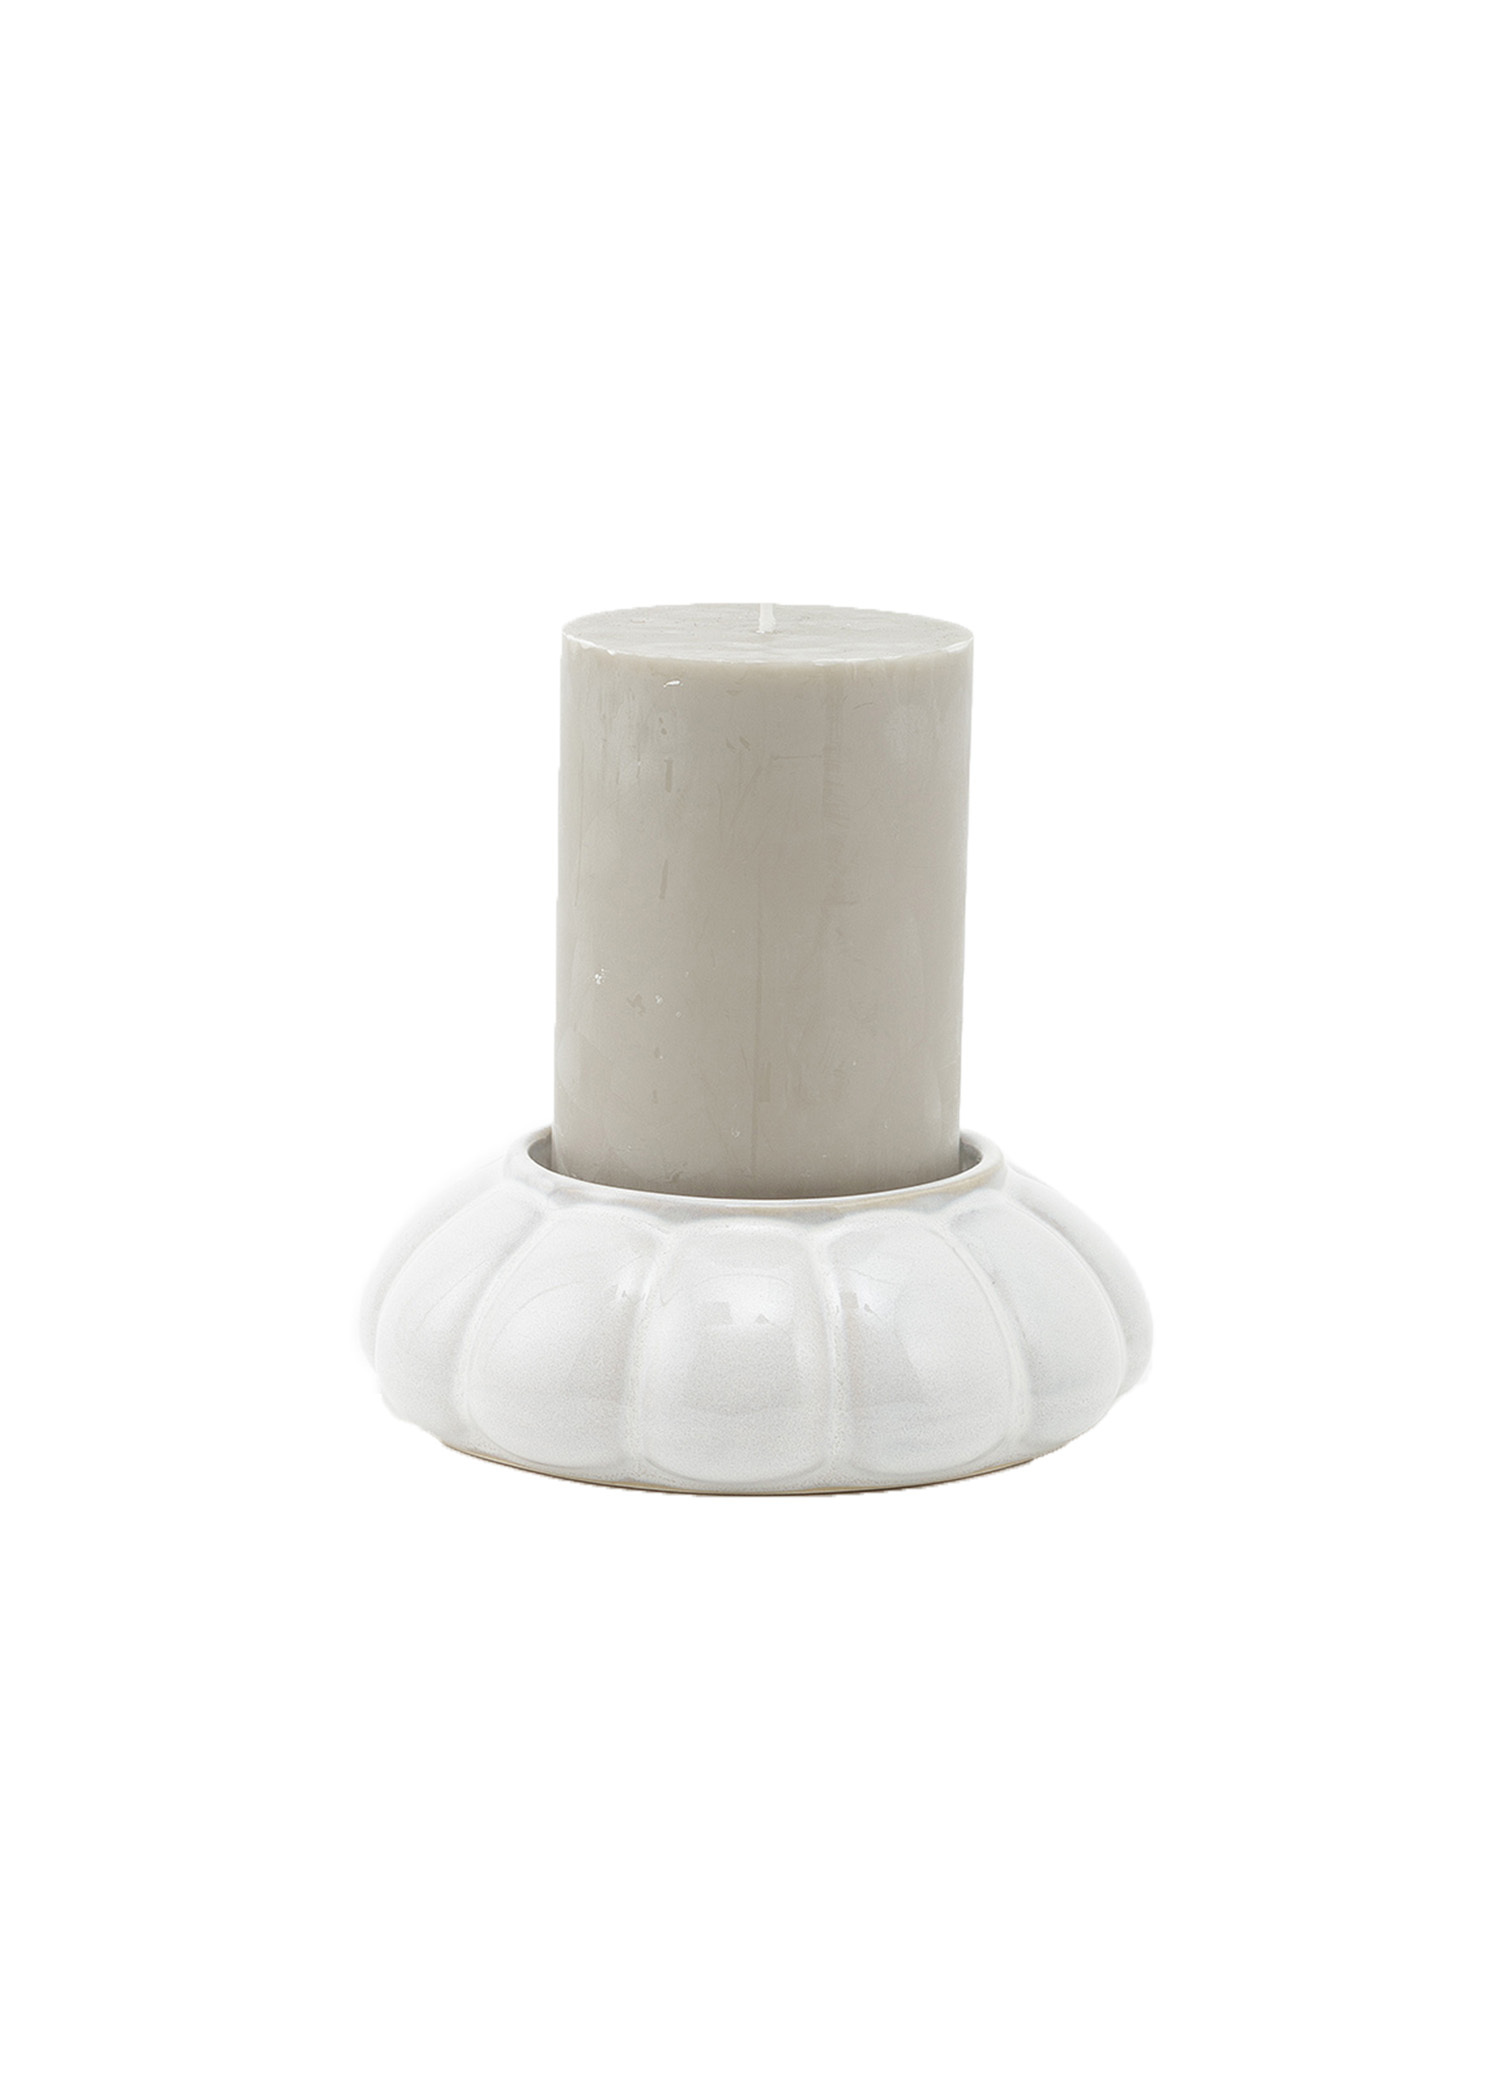 White stoneware candleholder